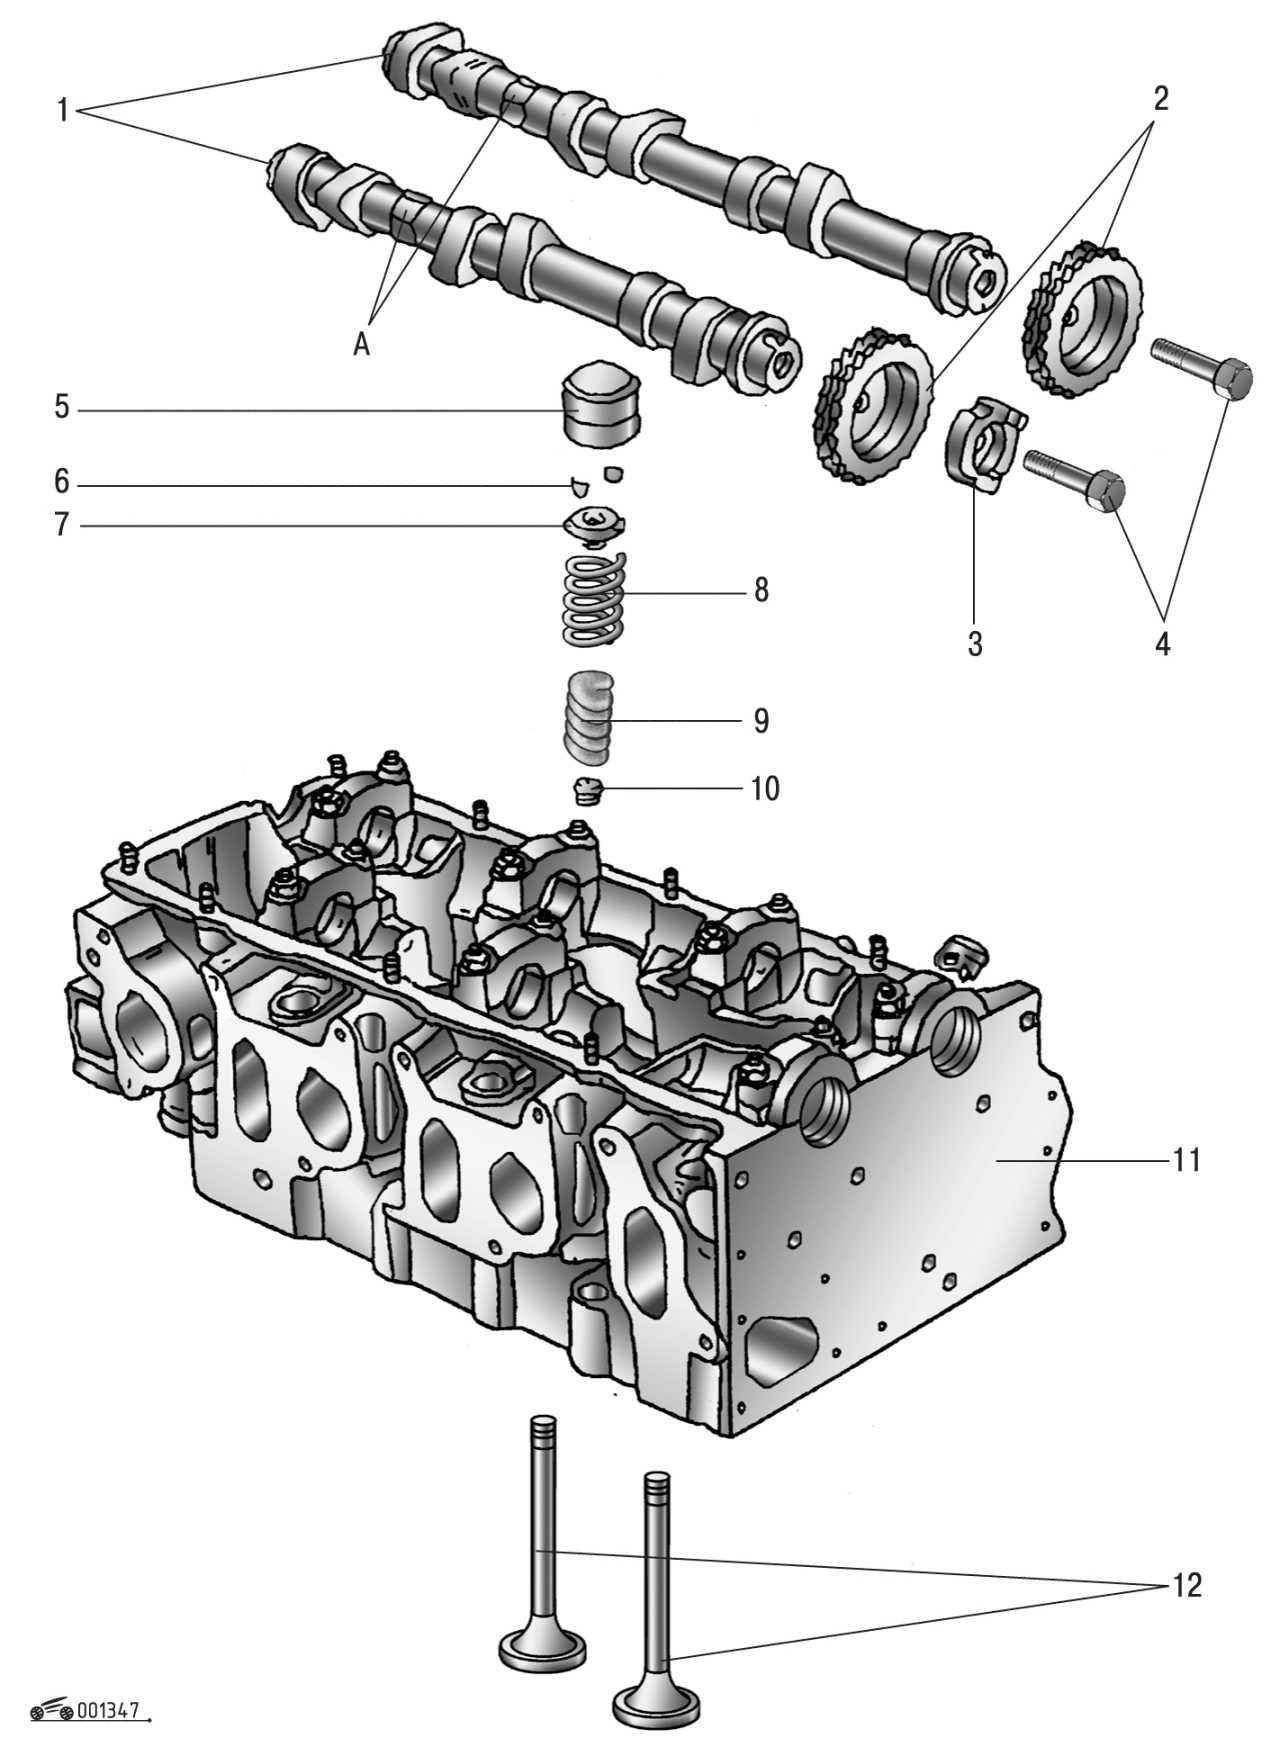 Головка блока цилиндров гбц, конструкция устройства и назначение работы в двигателе двс, схема составных частей